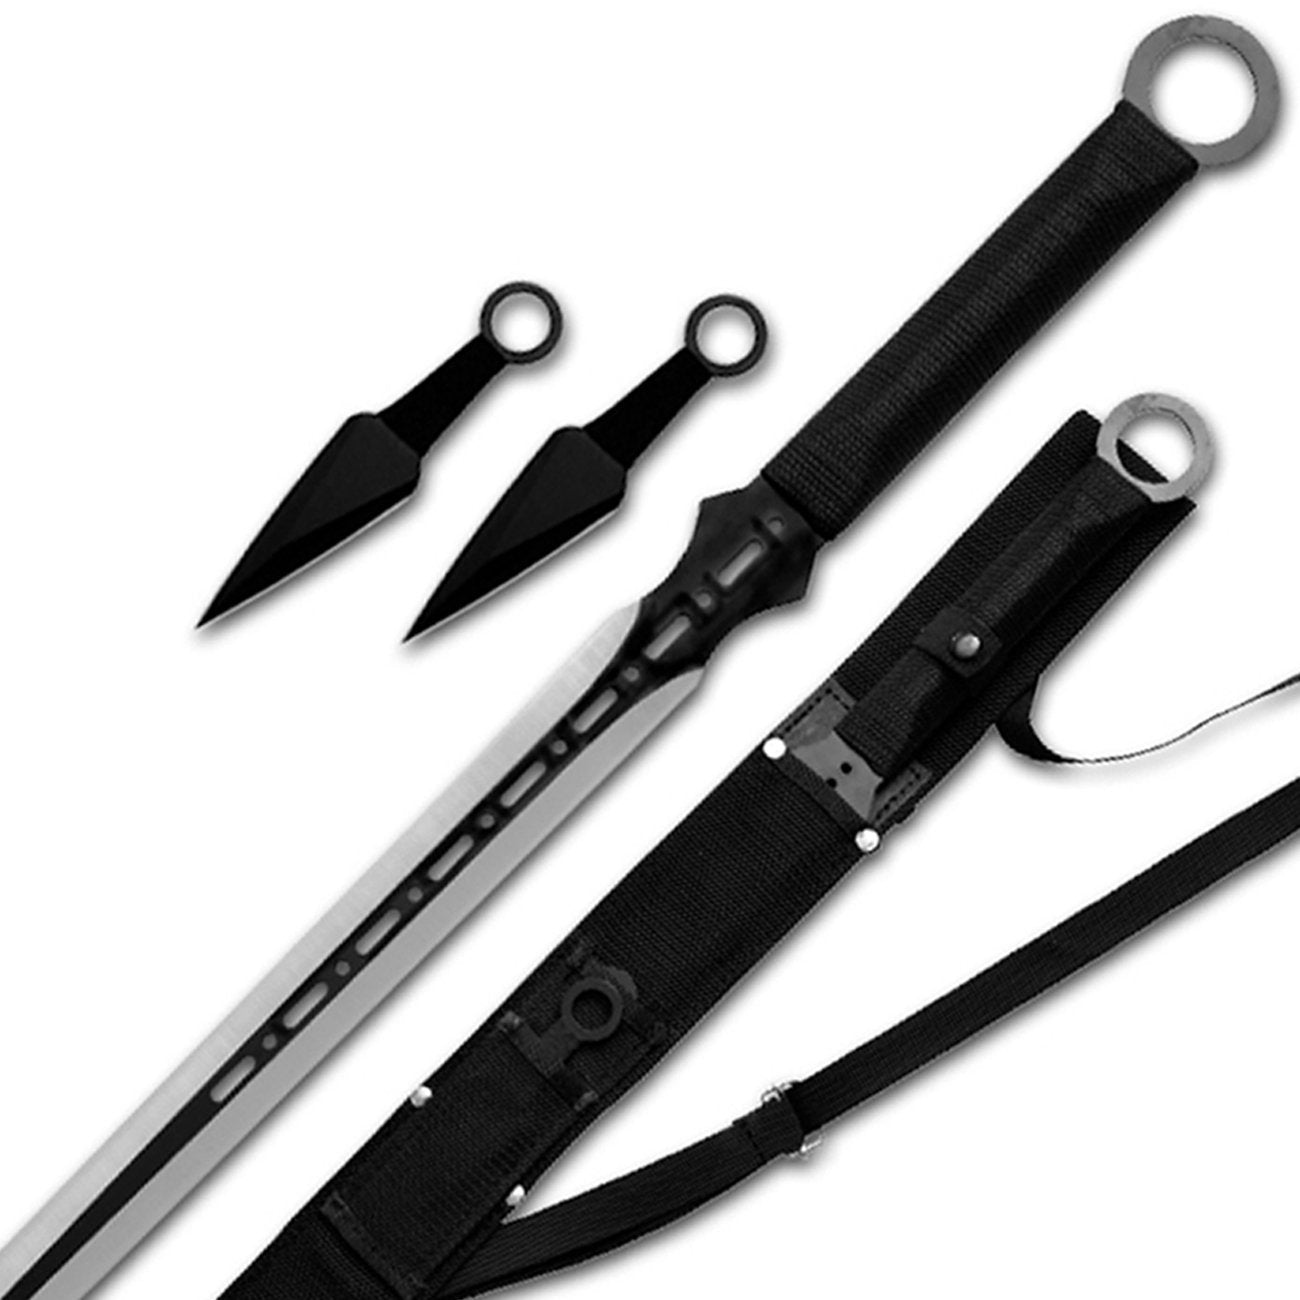 Ninja Sword and Knifes Set.